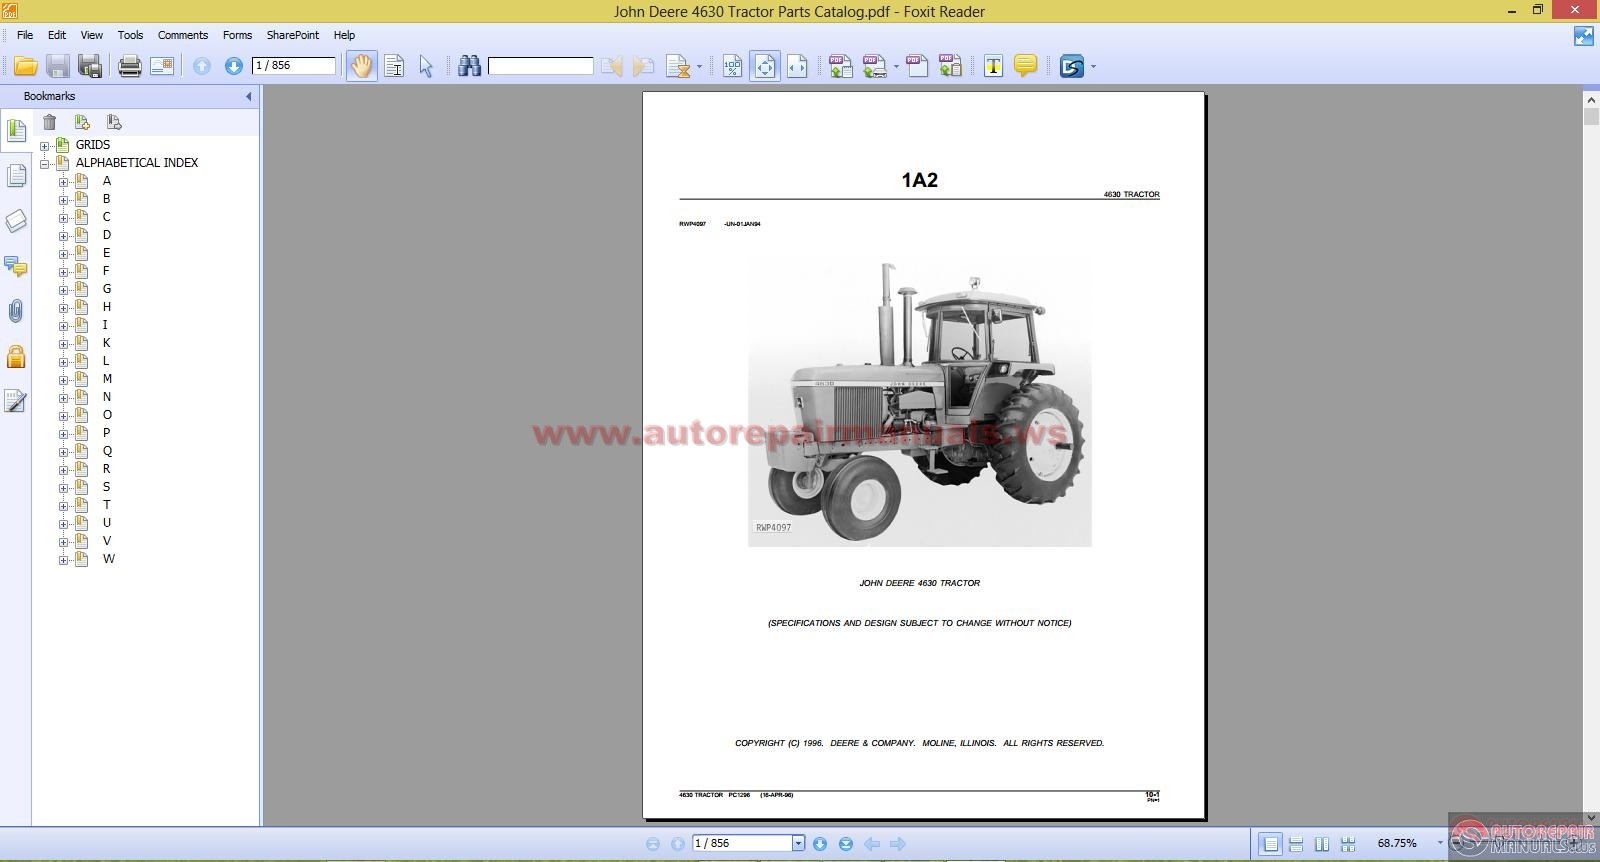 John Deere Tractor Parts Catalog: John Deere Tractors - e ...